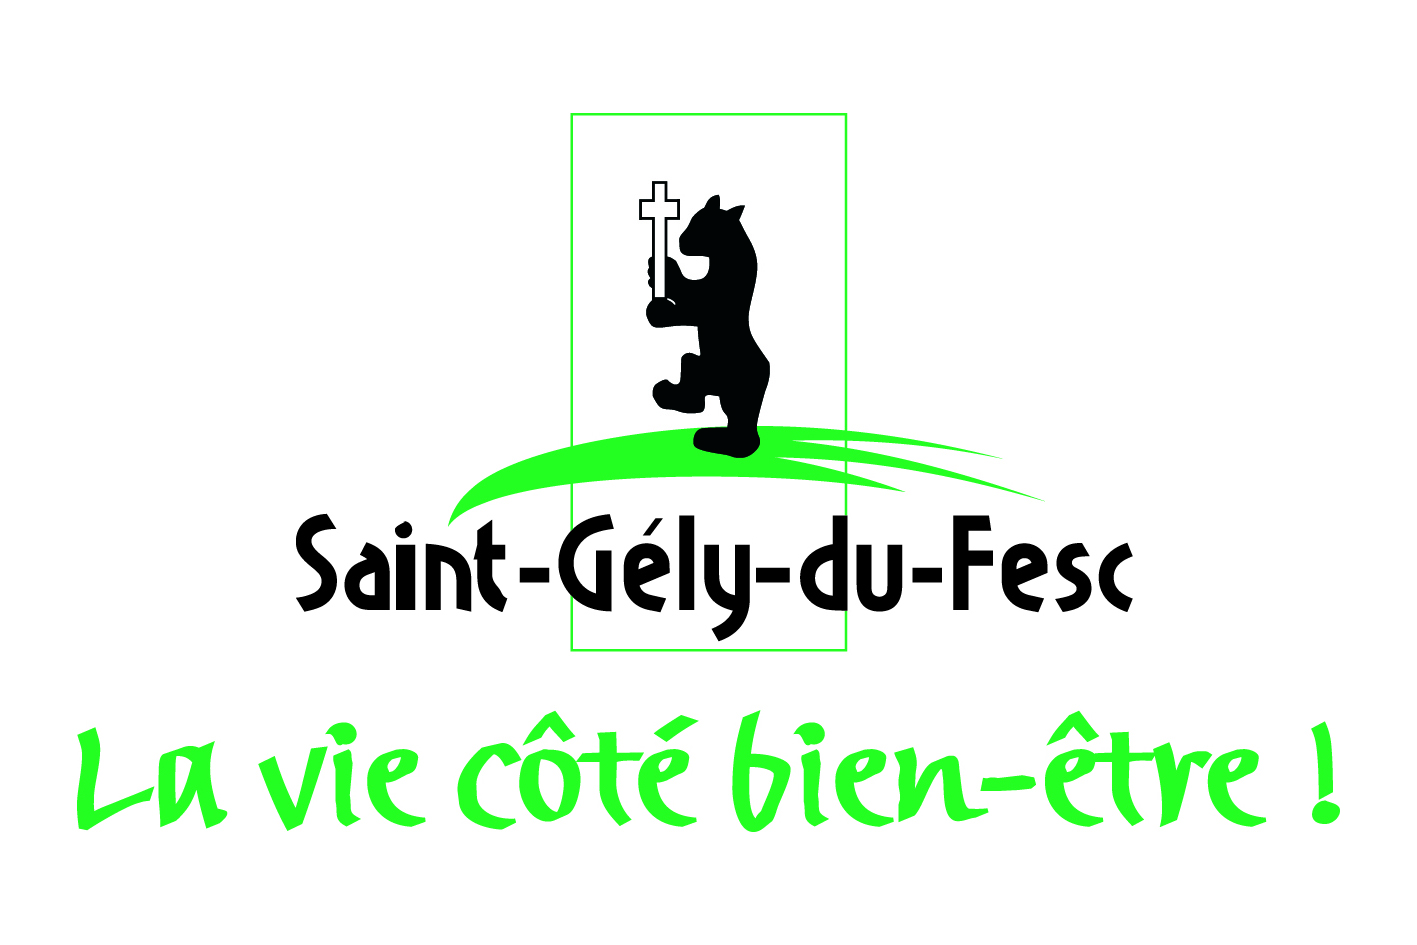 Saint-Gely-du-Fesc-1.jpg